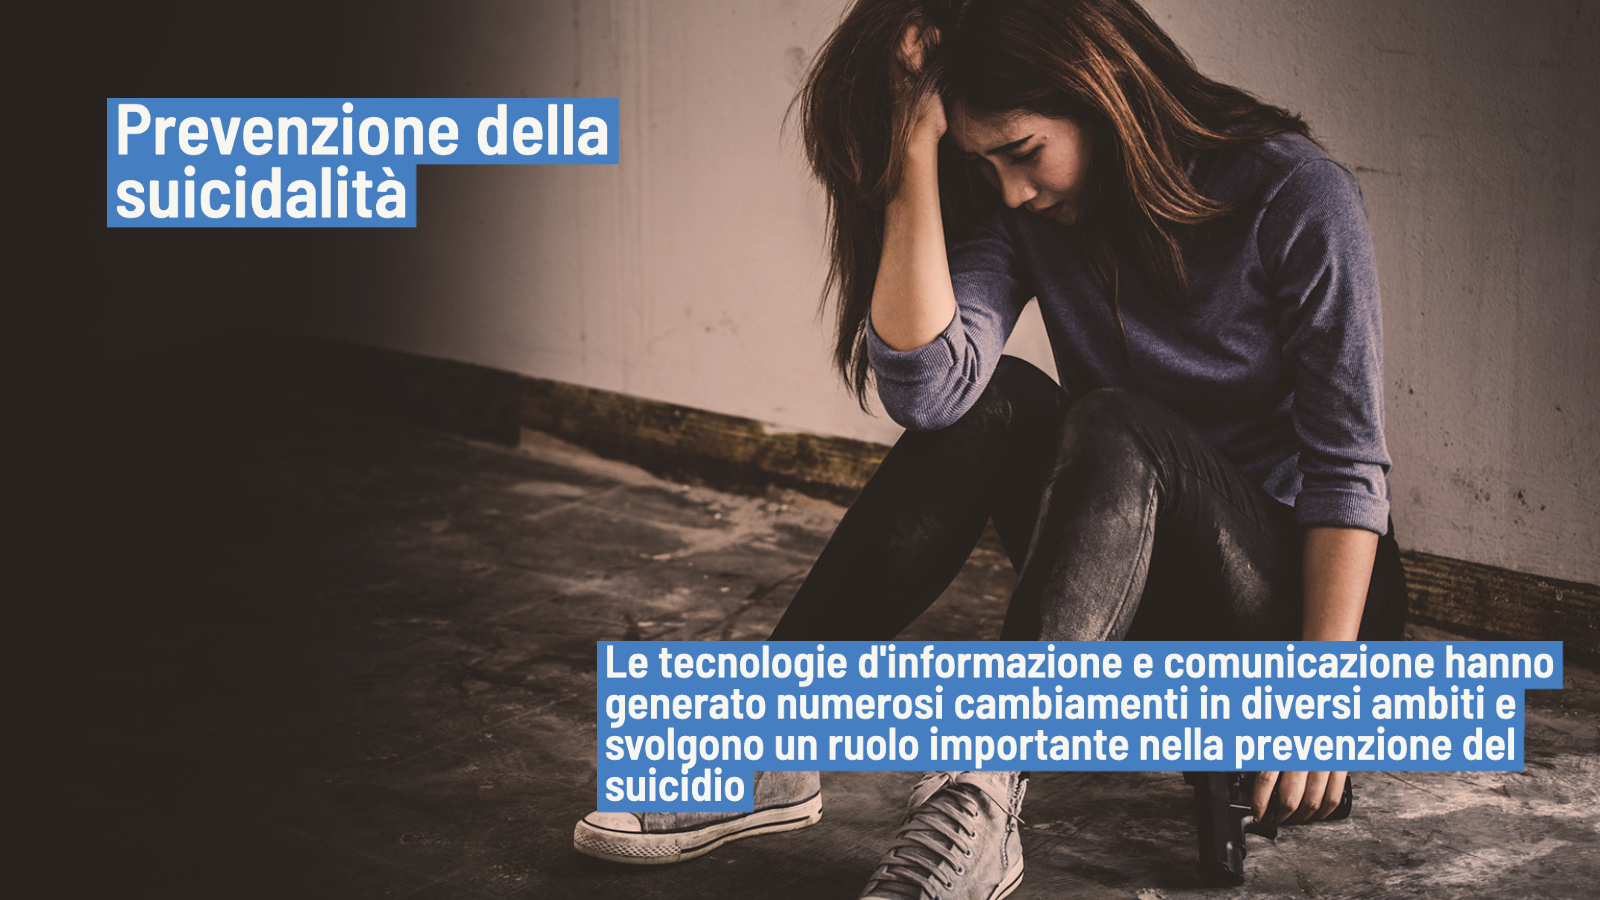 Suicidio e prevenzione: l'uso di tecnologie d' informazione e comunicazione